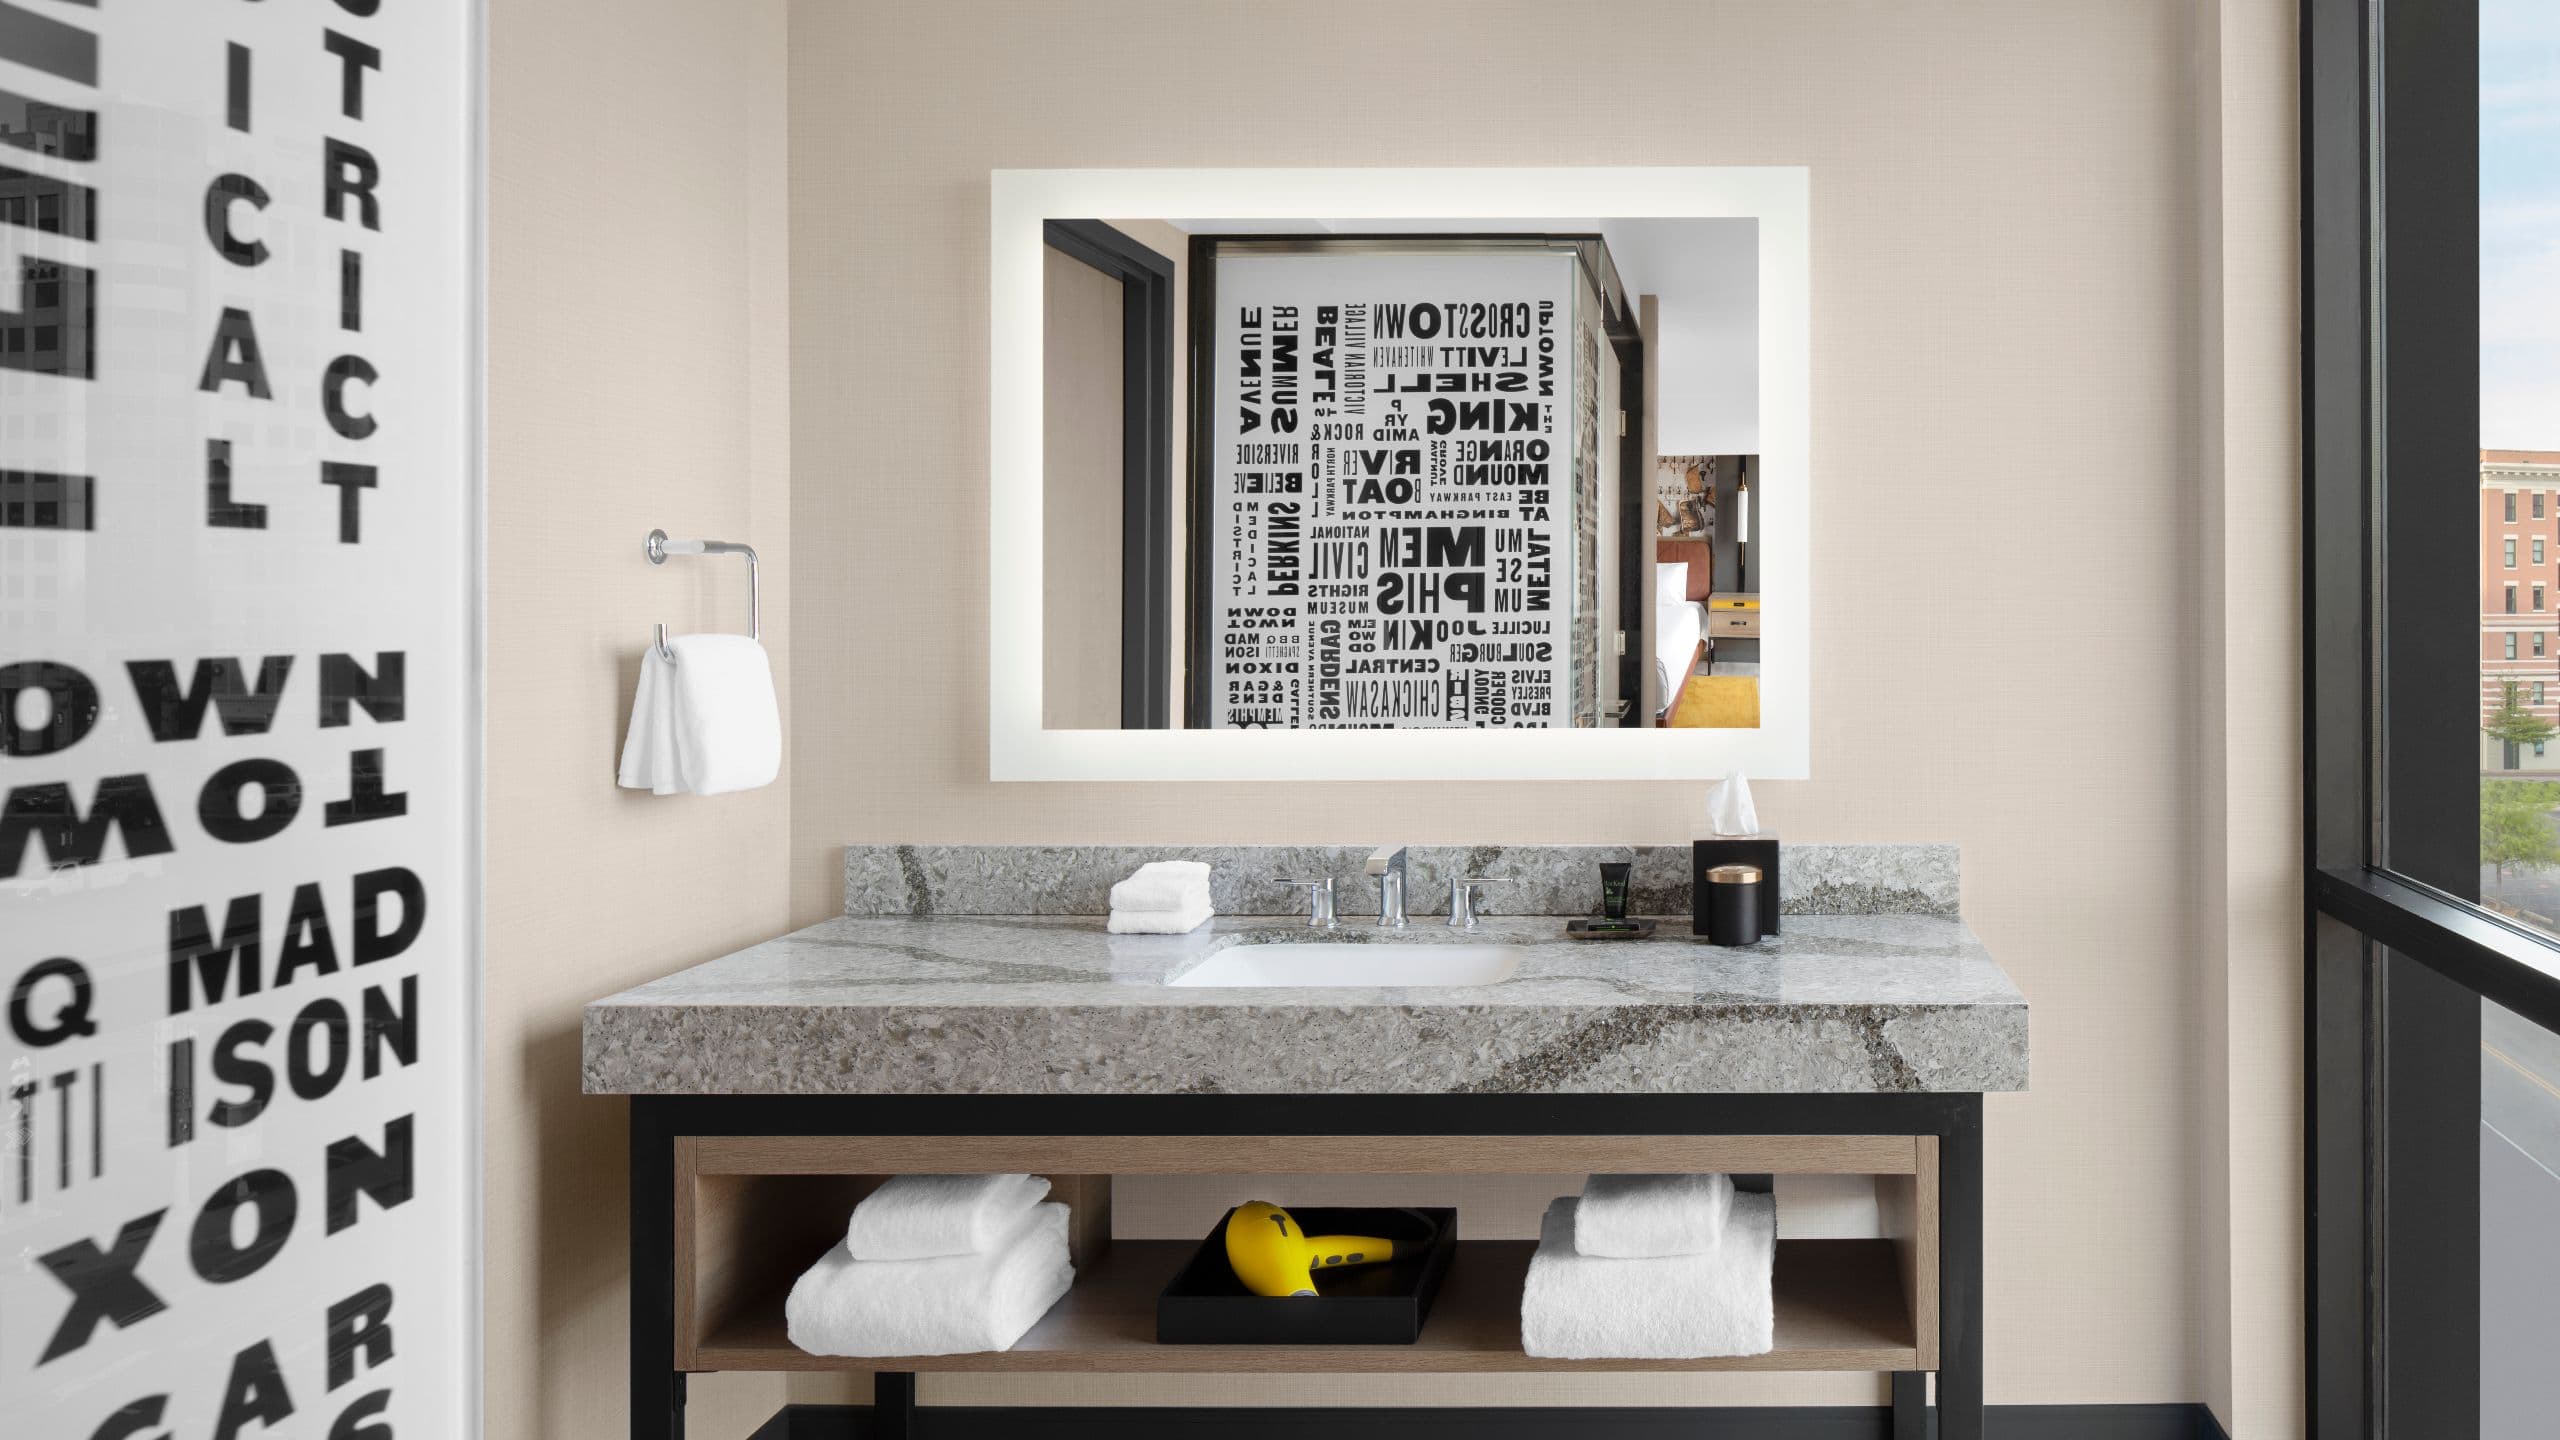 Beale Street Suite bathroom vanity with amenities